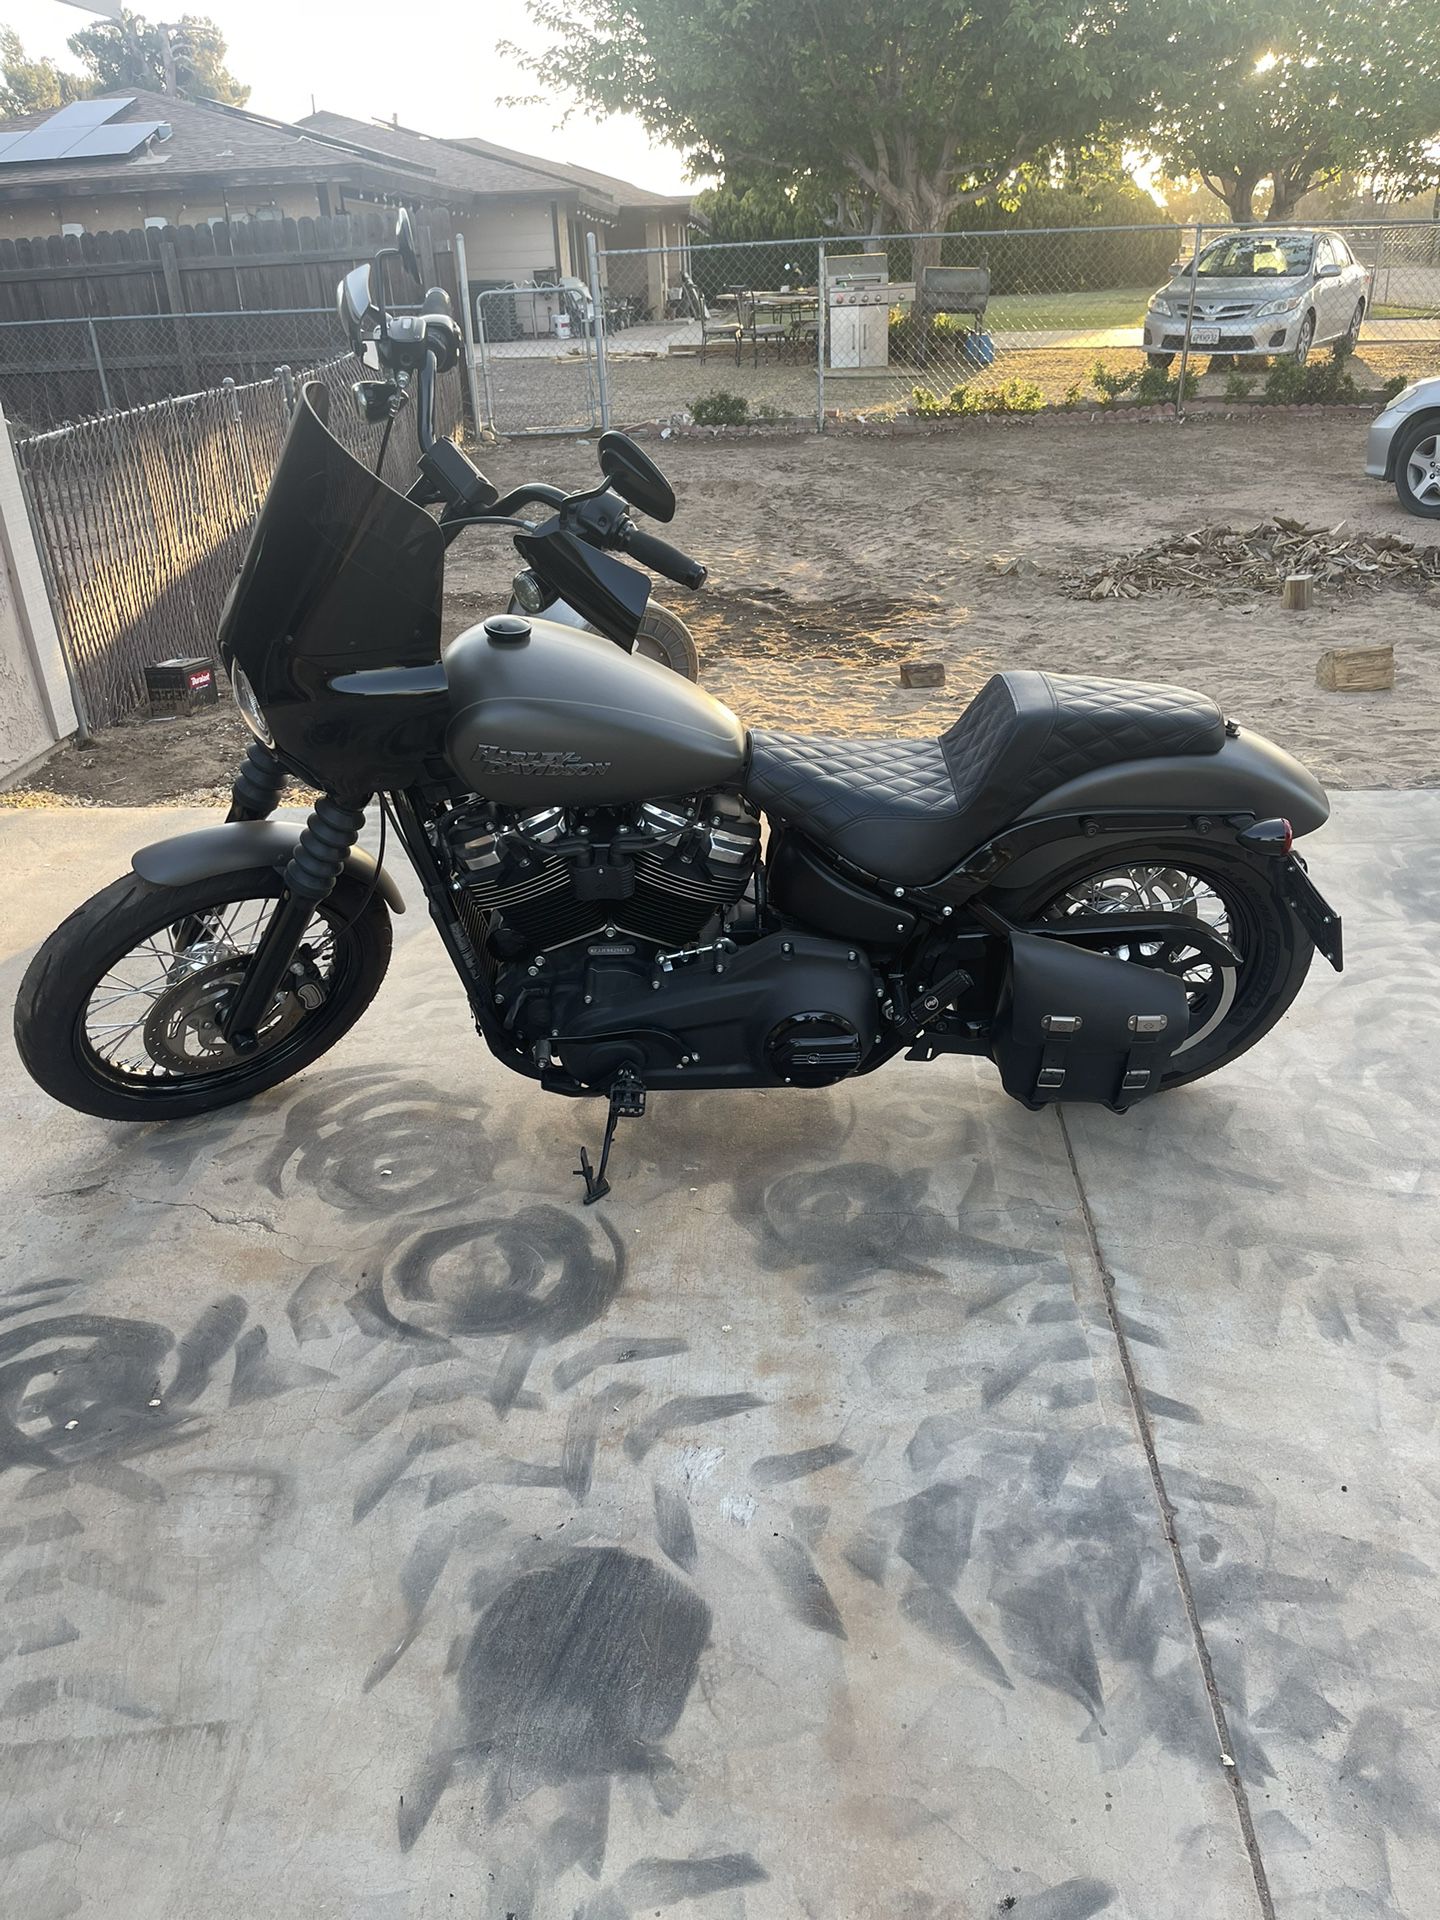 2019 Harley Davidson Softail street bob